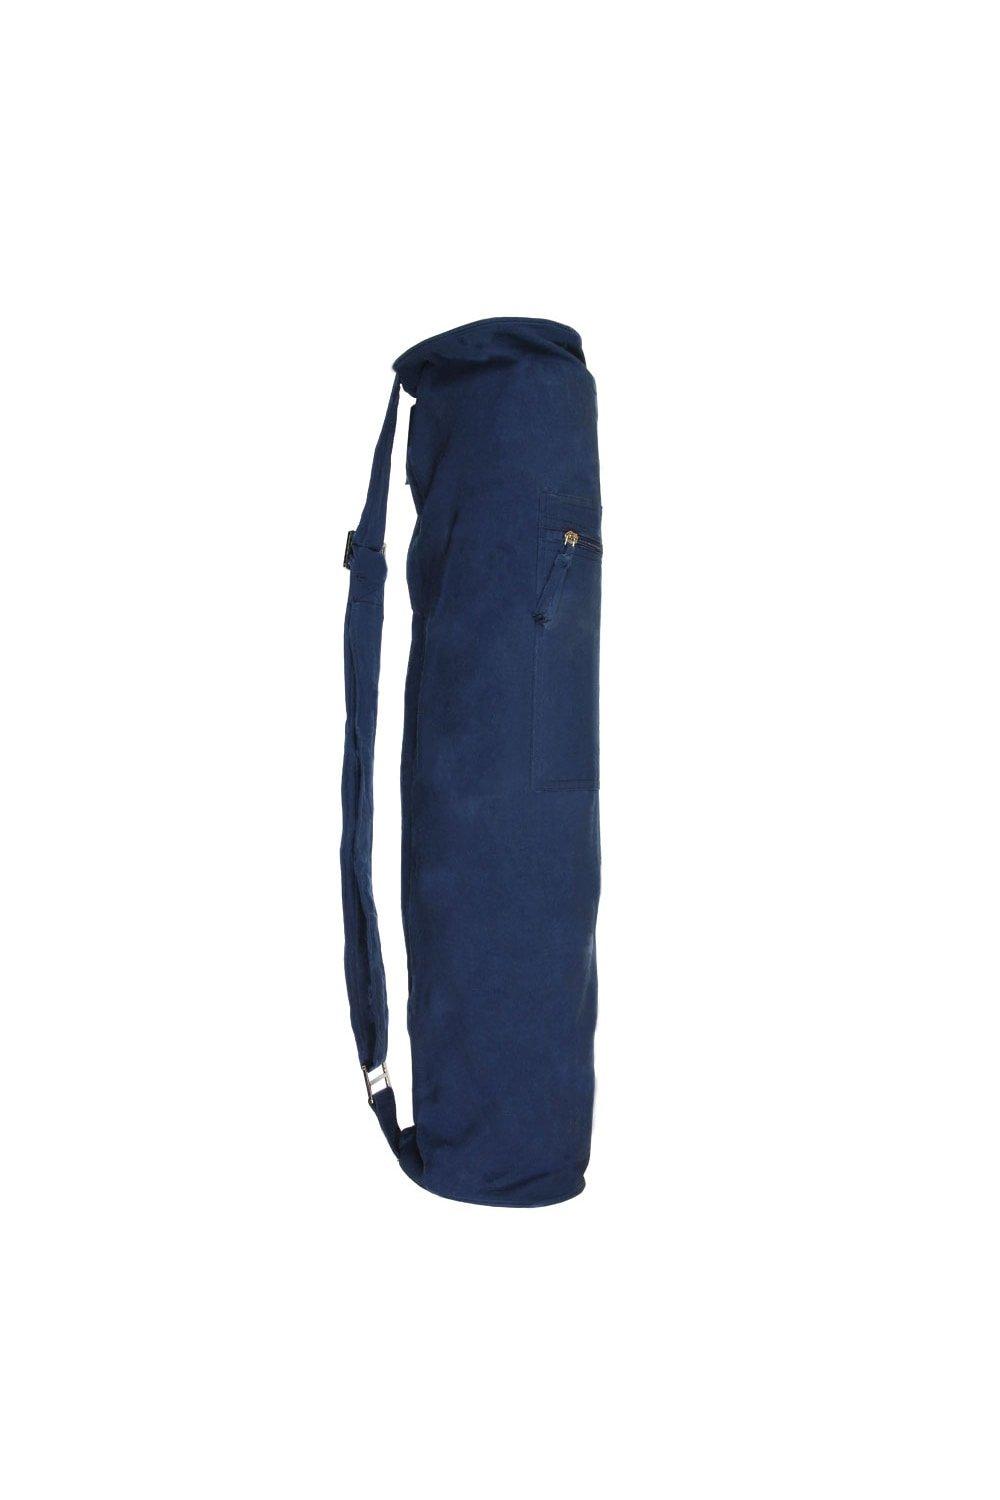 Джутовая сумка для коврика для йоги Yoga-Mad, синий косметичка mior на молнии 19х21х9 см ручки для переноски крючок для подвешивания подкладка водонепроницаемая фиолетовый